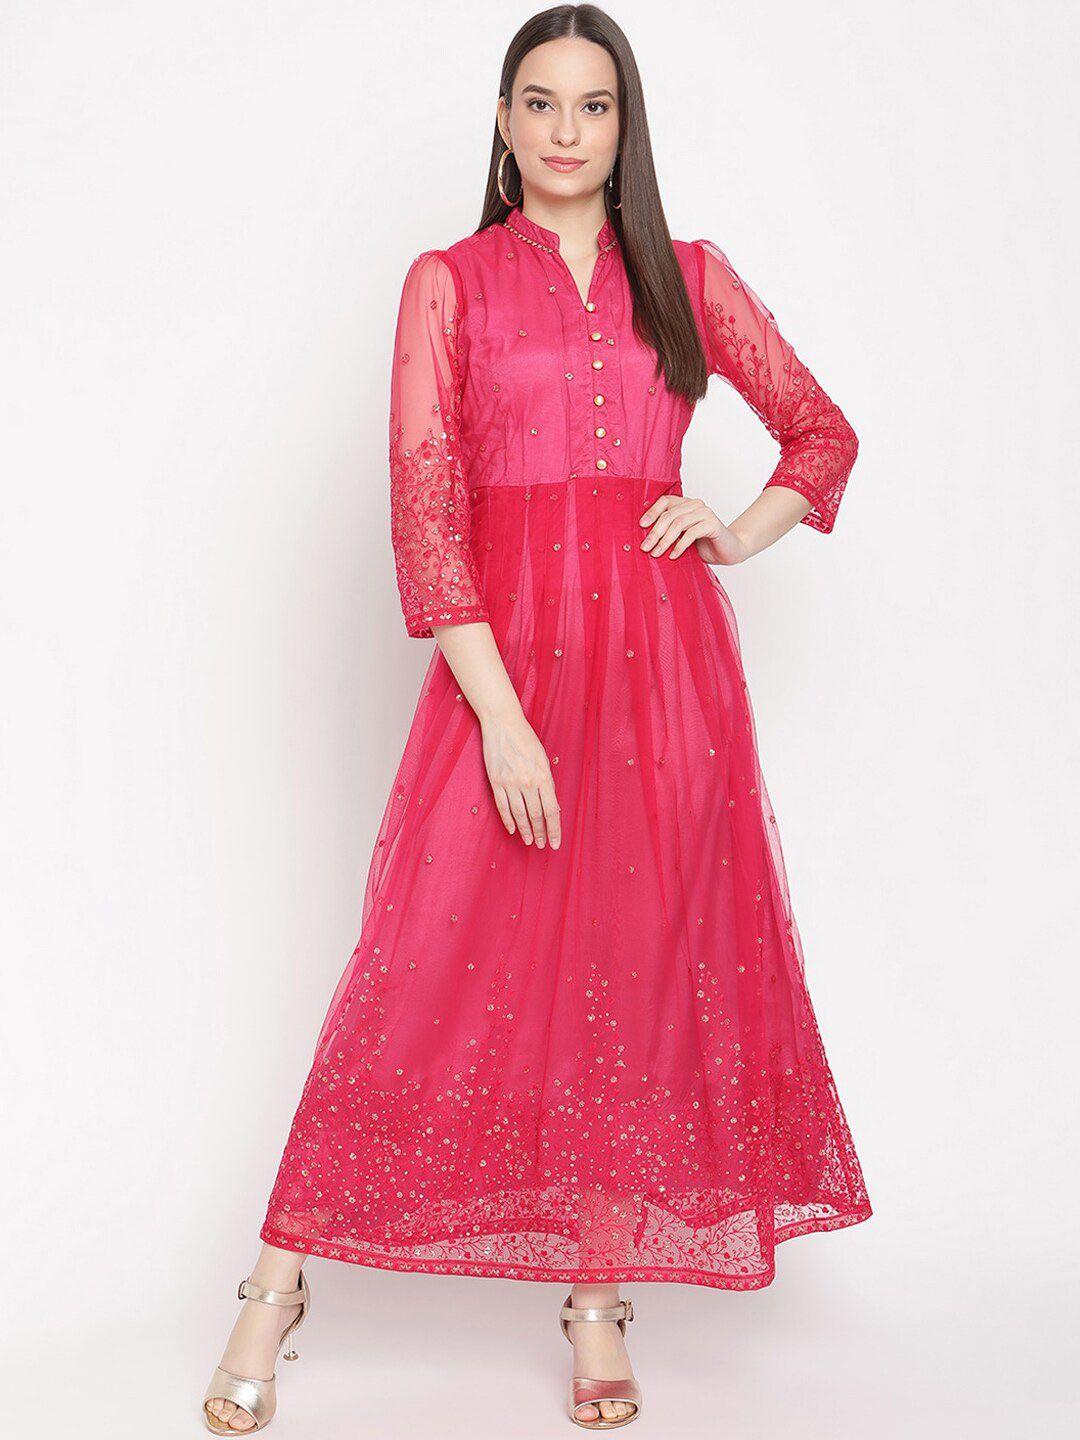 be indi women embellished ethnic dresses